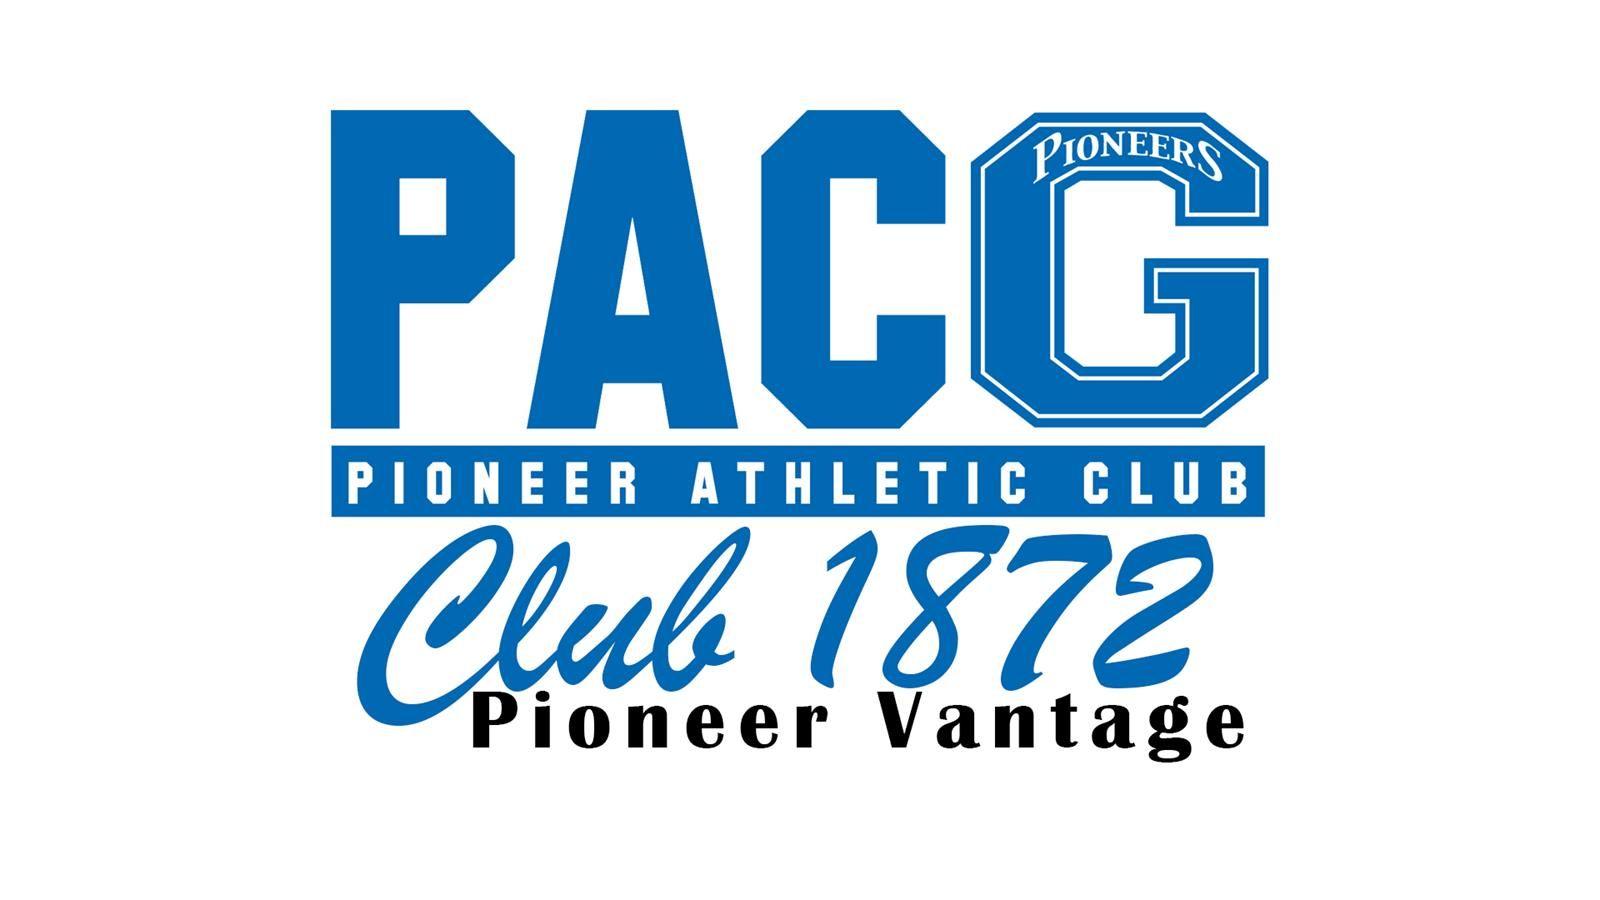 1872 Logo - Pioneer Athletic Club / Club 1872 / Pioneer Vantage - Glenville ...